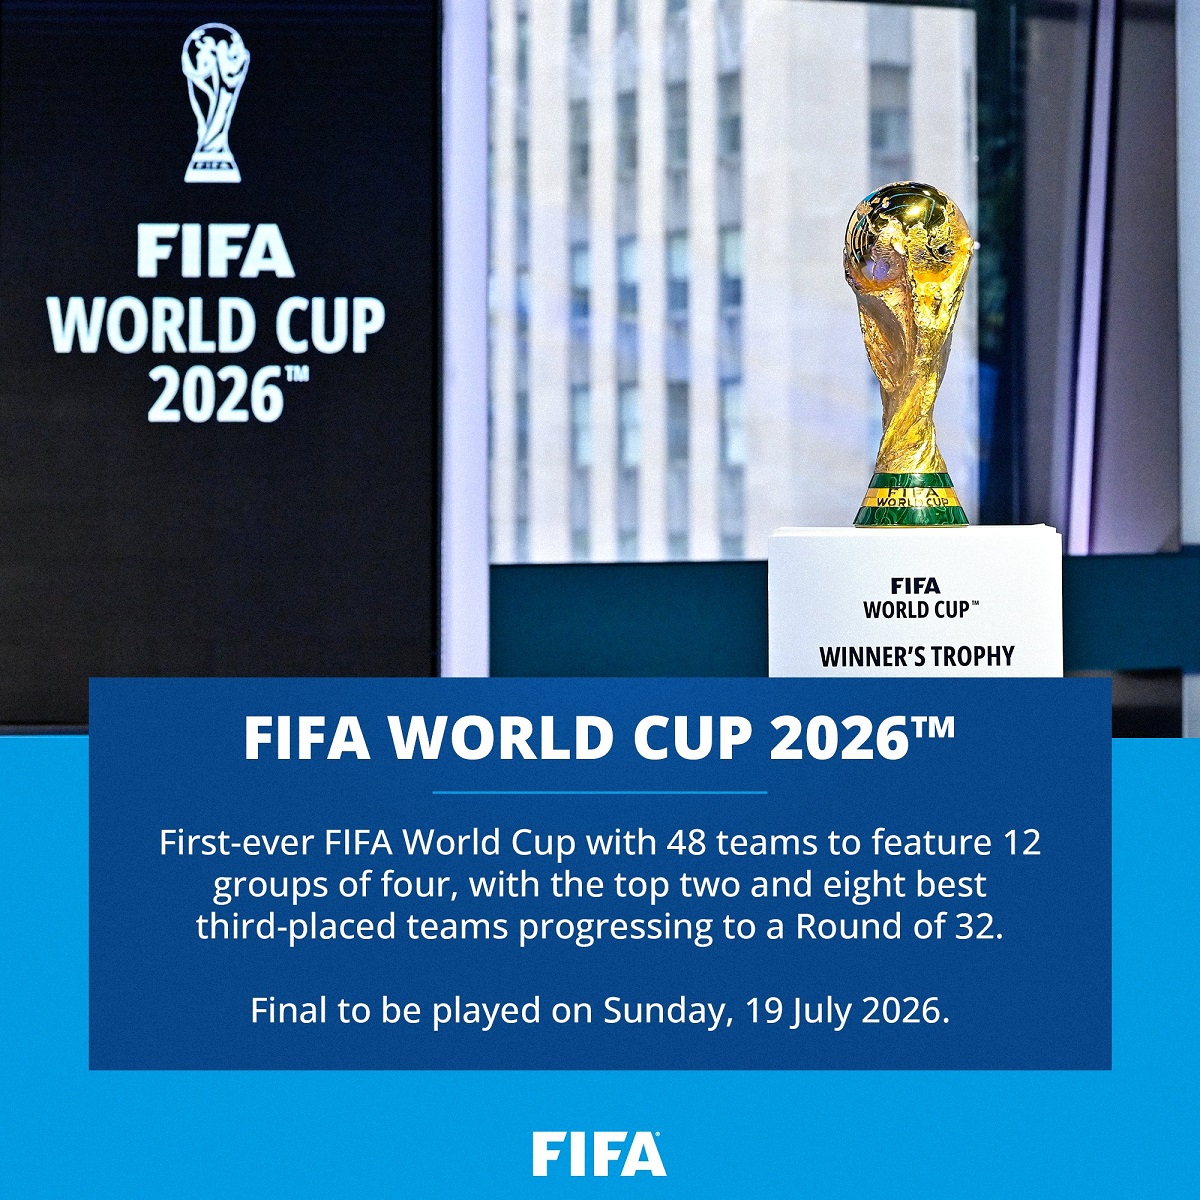 Com jogos em três países, Fifa anuncia cidades-sede da Copa de 2026